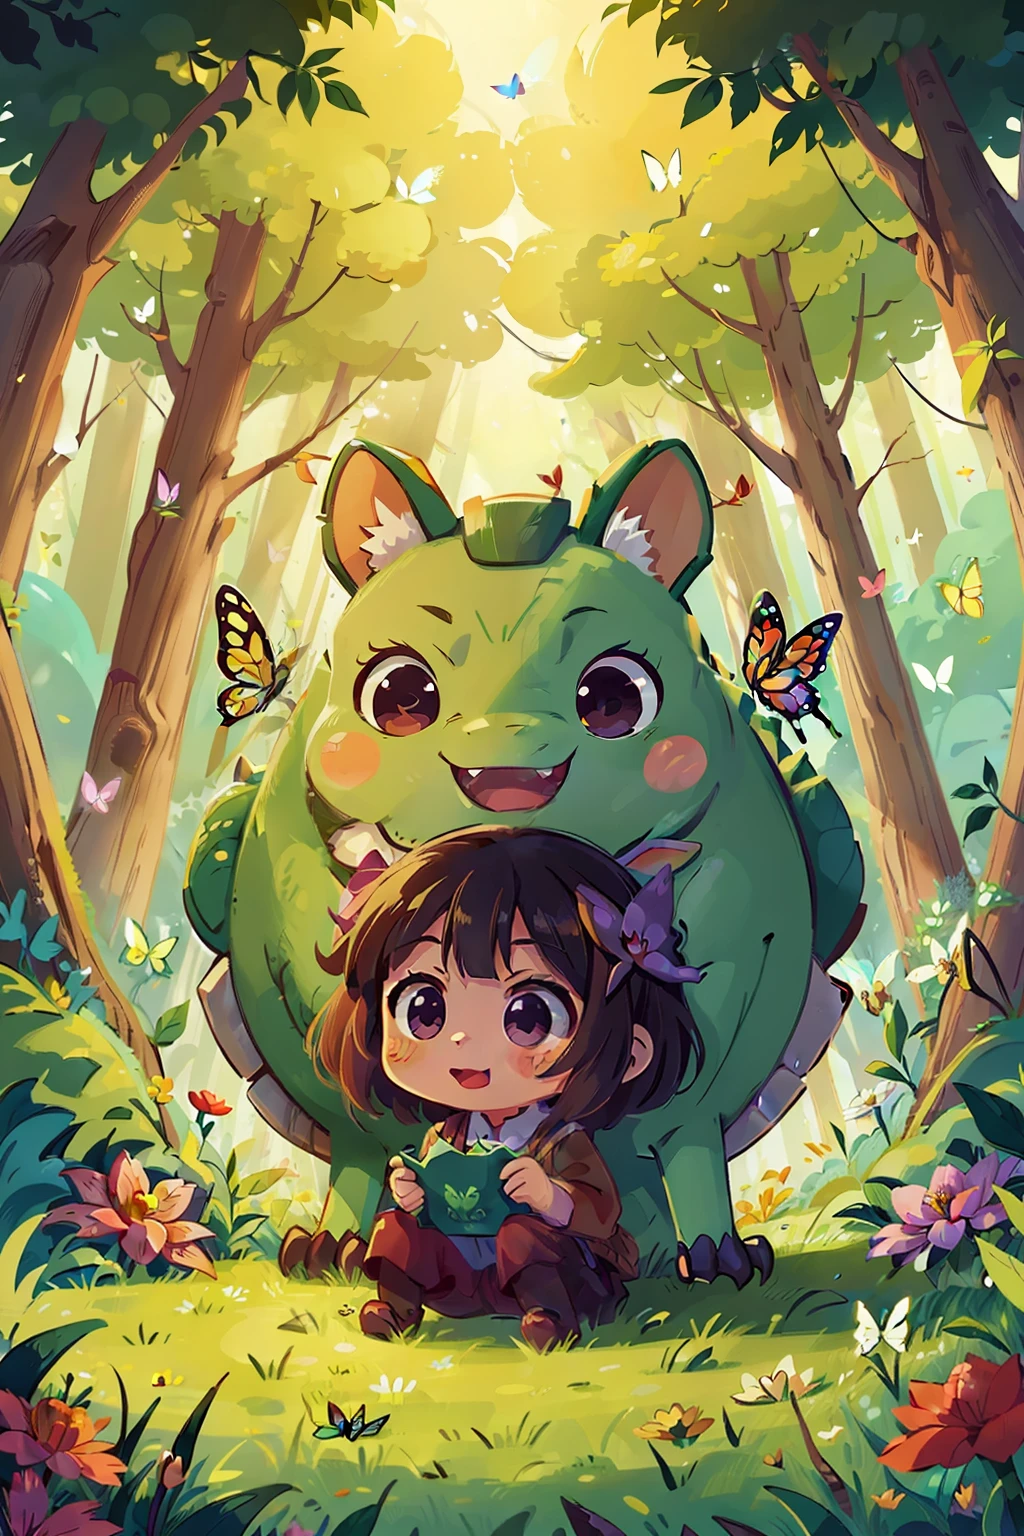  reiko , Bonheur , inspiration de l&#39;anime: Un 5,Un dragon herbivore vieux de 000 ans est injustement méchant, forêt , fleur , papillon couleur joie, ambiance romantique, lumières chaudes.